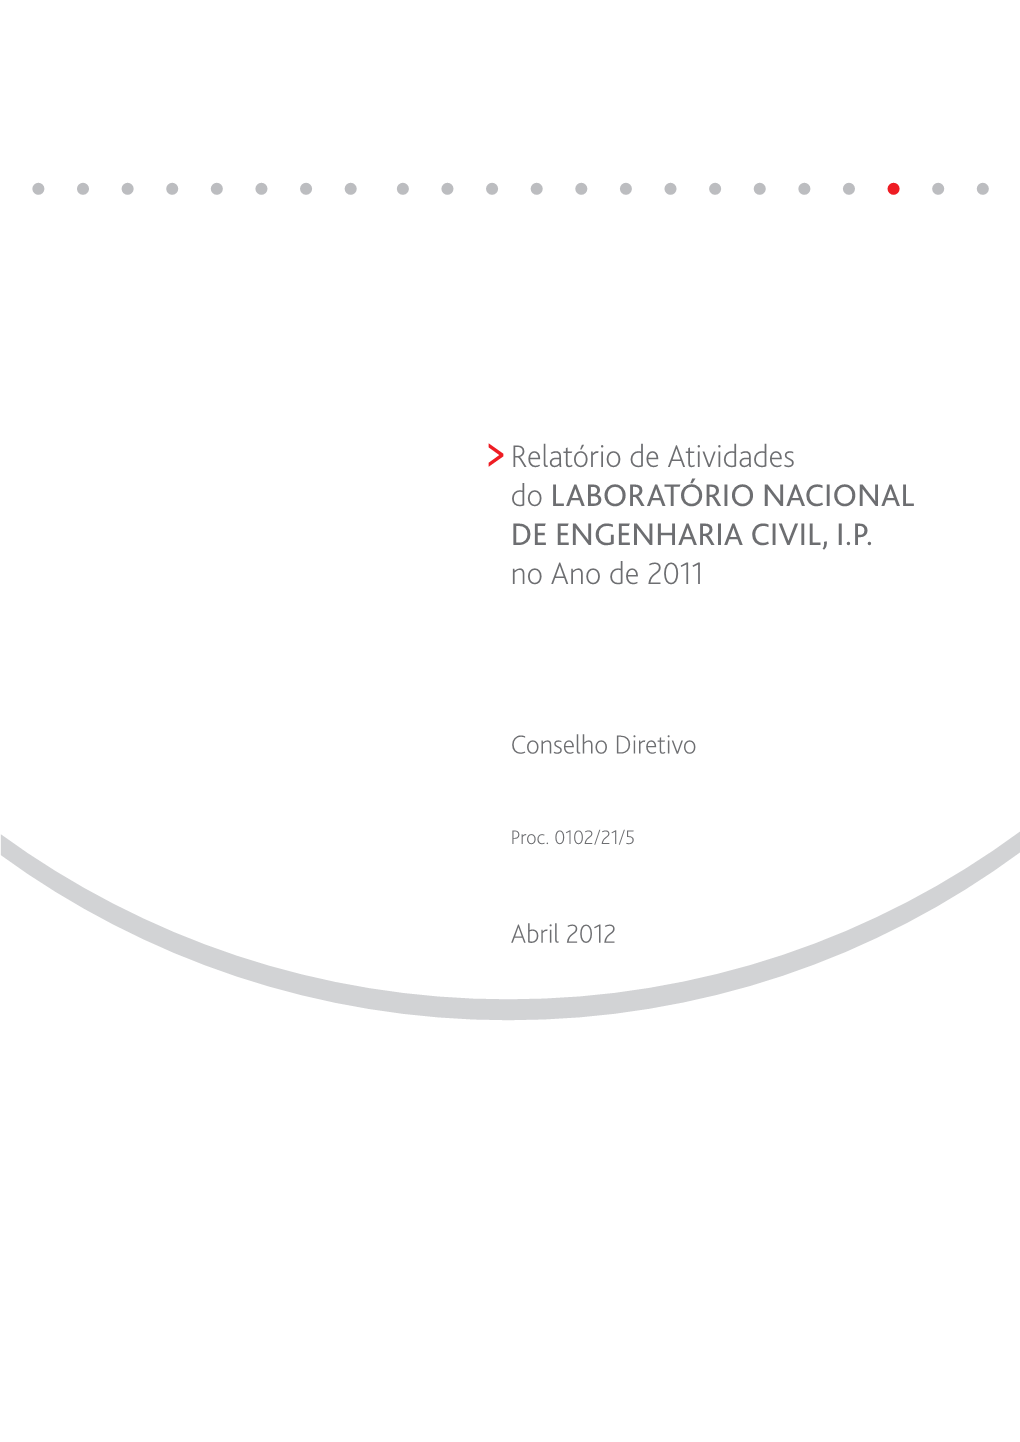 Relatório De Atividades Do LABORATÓRIO NACIONAL DE ENGENHARIA CIVIL, I.P